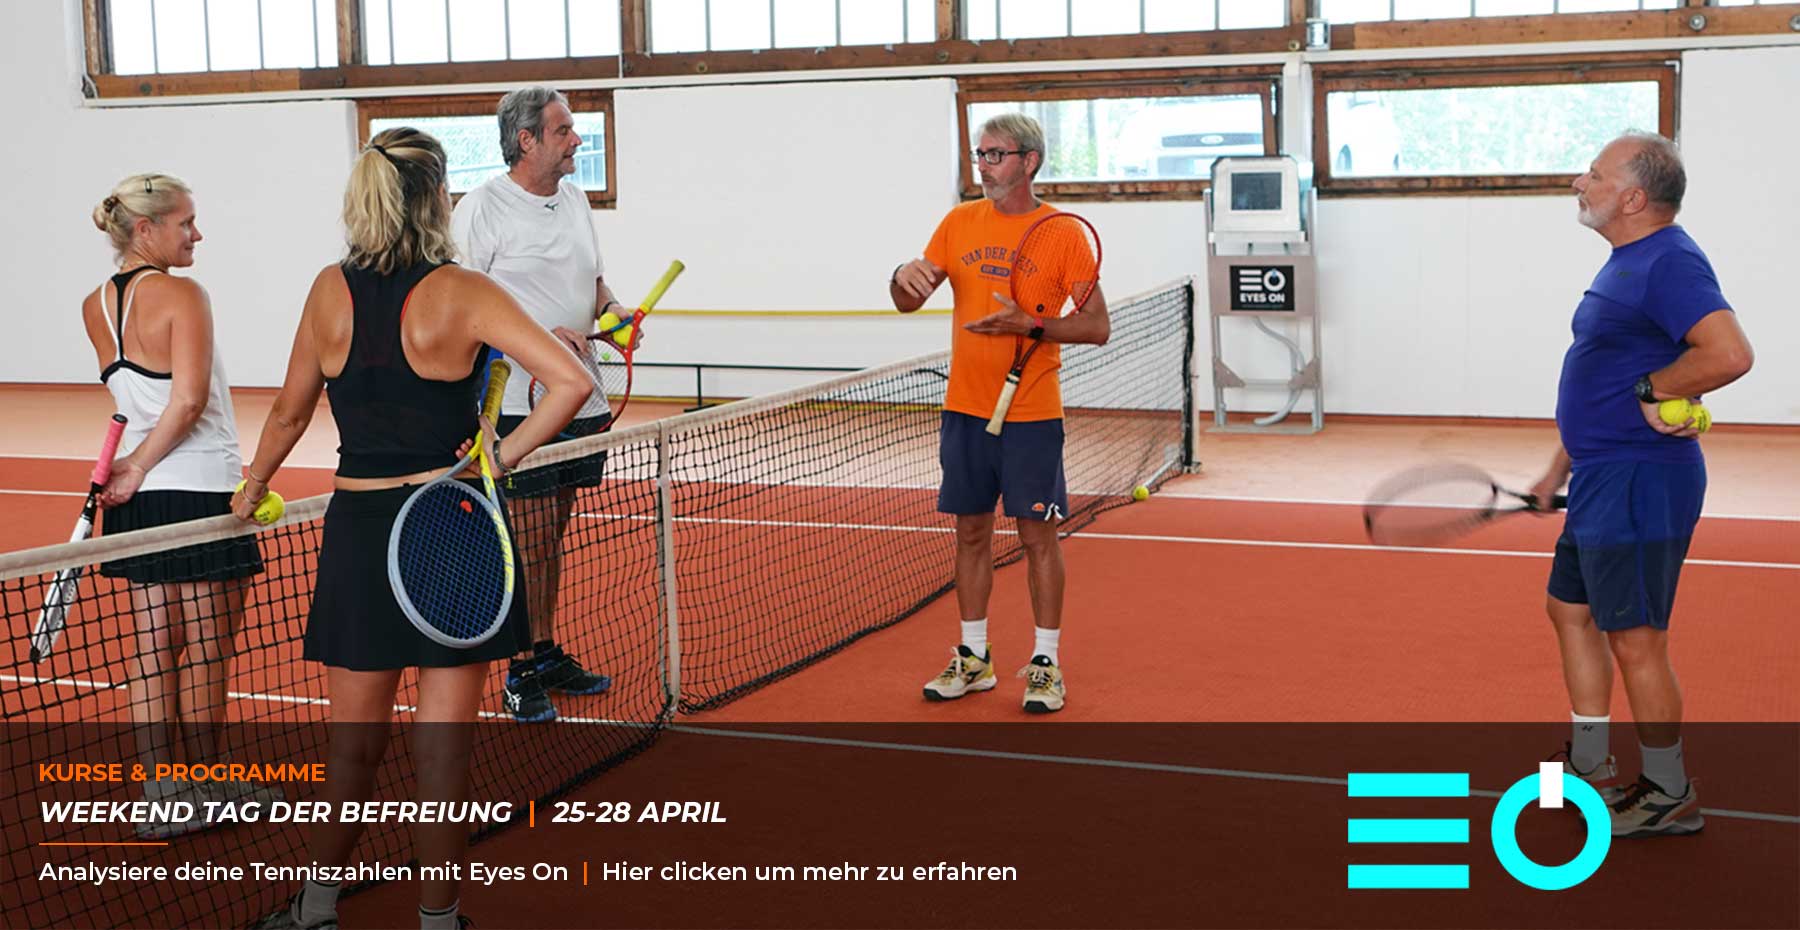 WEEKEND TAG DER BEFREIUNG – Analysiere deine Tenniszahlen mit Eyes On